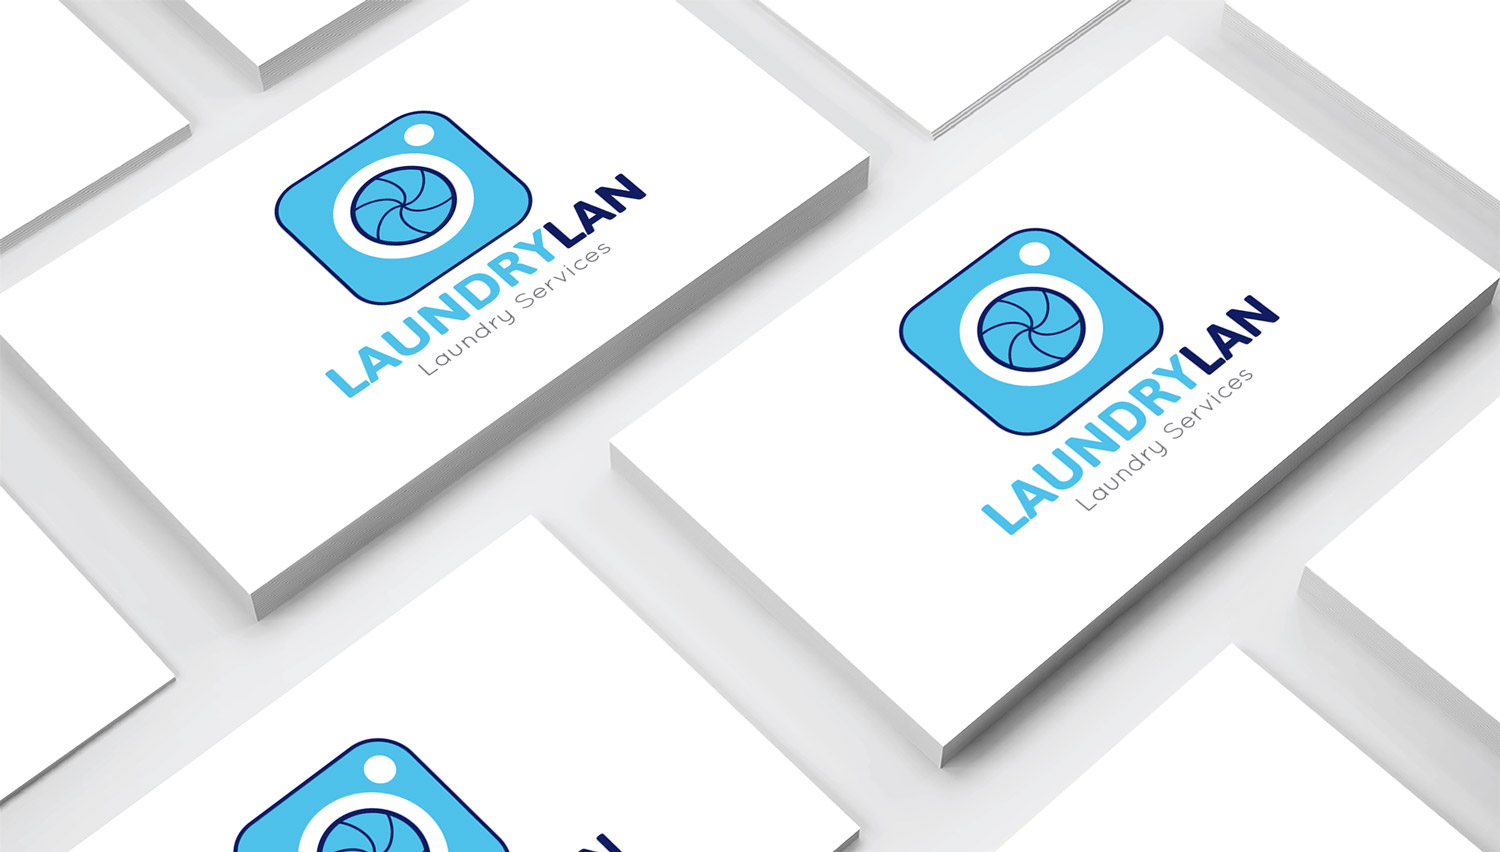 LaundryLan